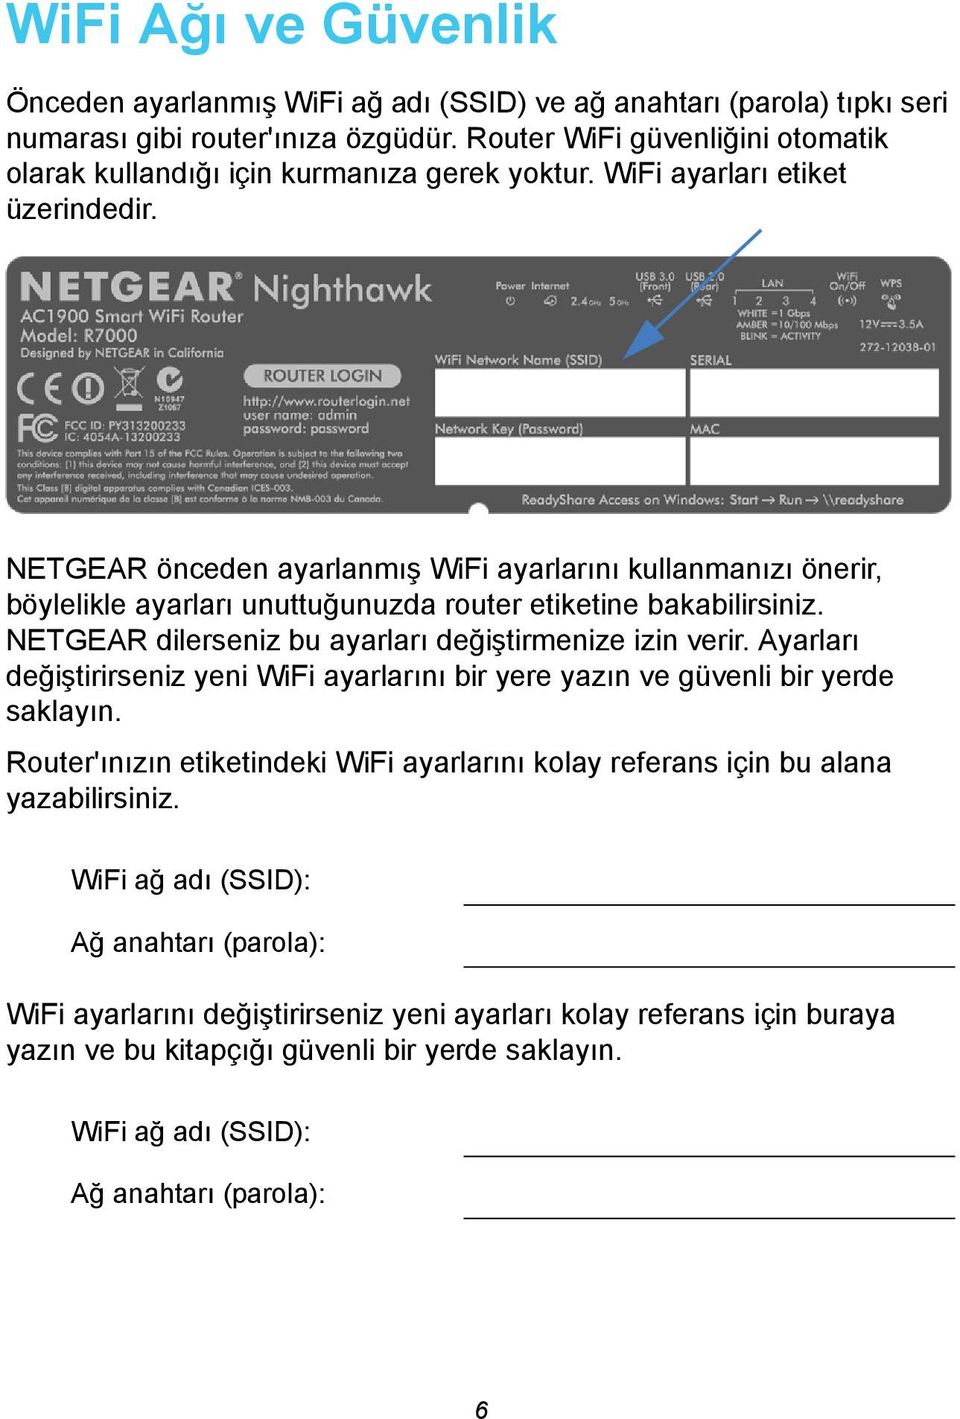 NETGEAR önceden ayarlanmış WiFi ayarlarını kullanmanızı önerir, böylelikle ayarları unuttuğunuzda router etiketine bakabilirsiniz. NETGEAR dilerseniz bu ayarları değiştirmenize izin verir.